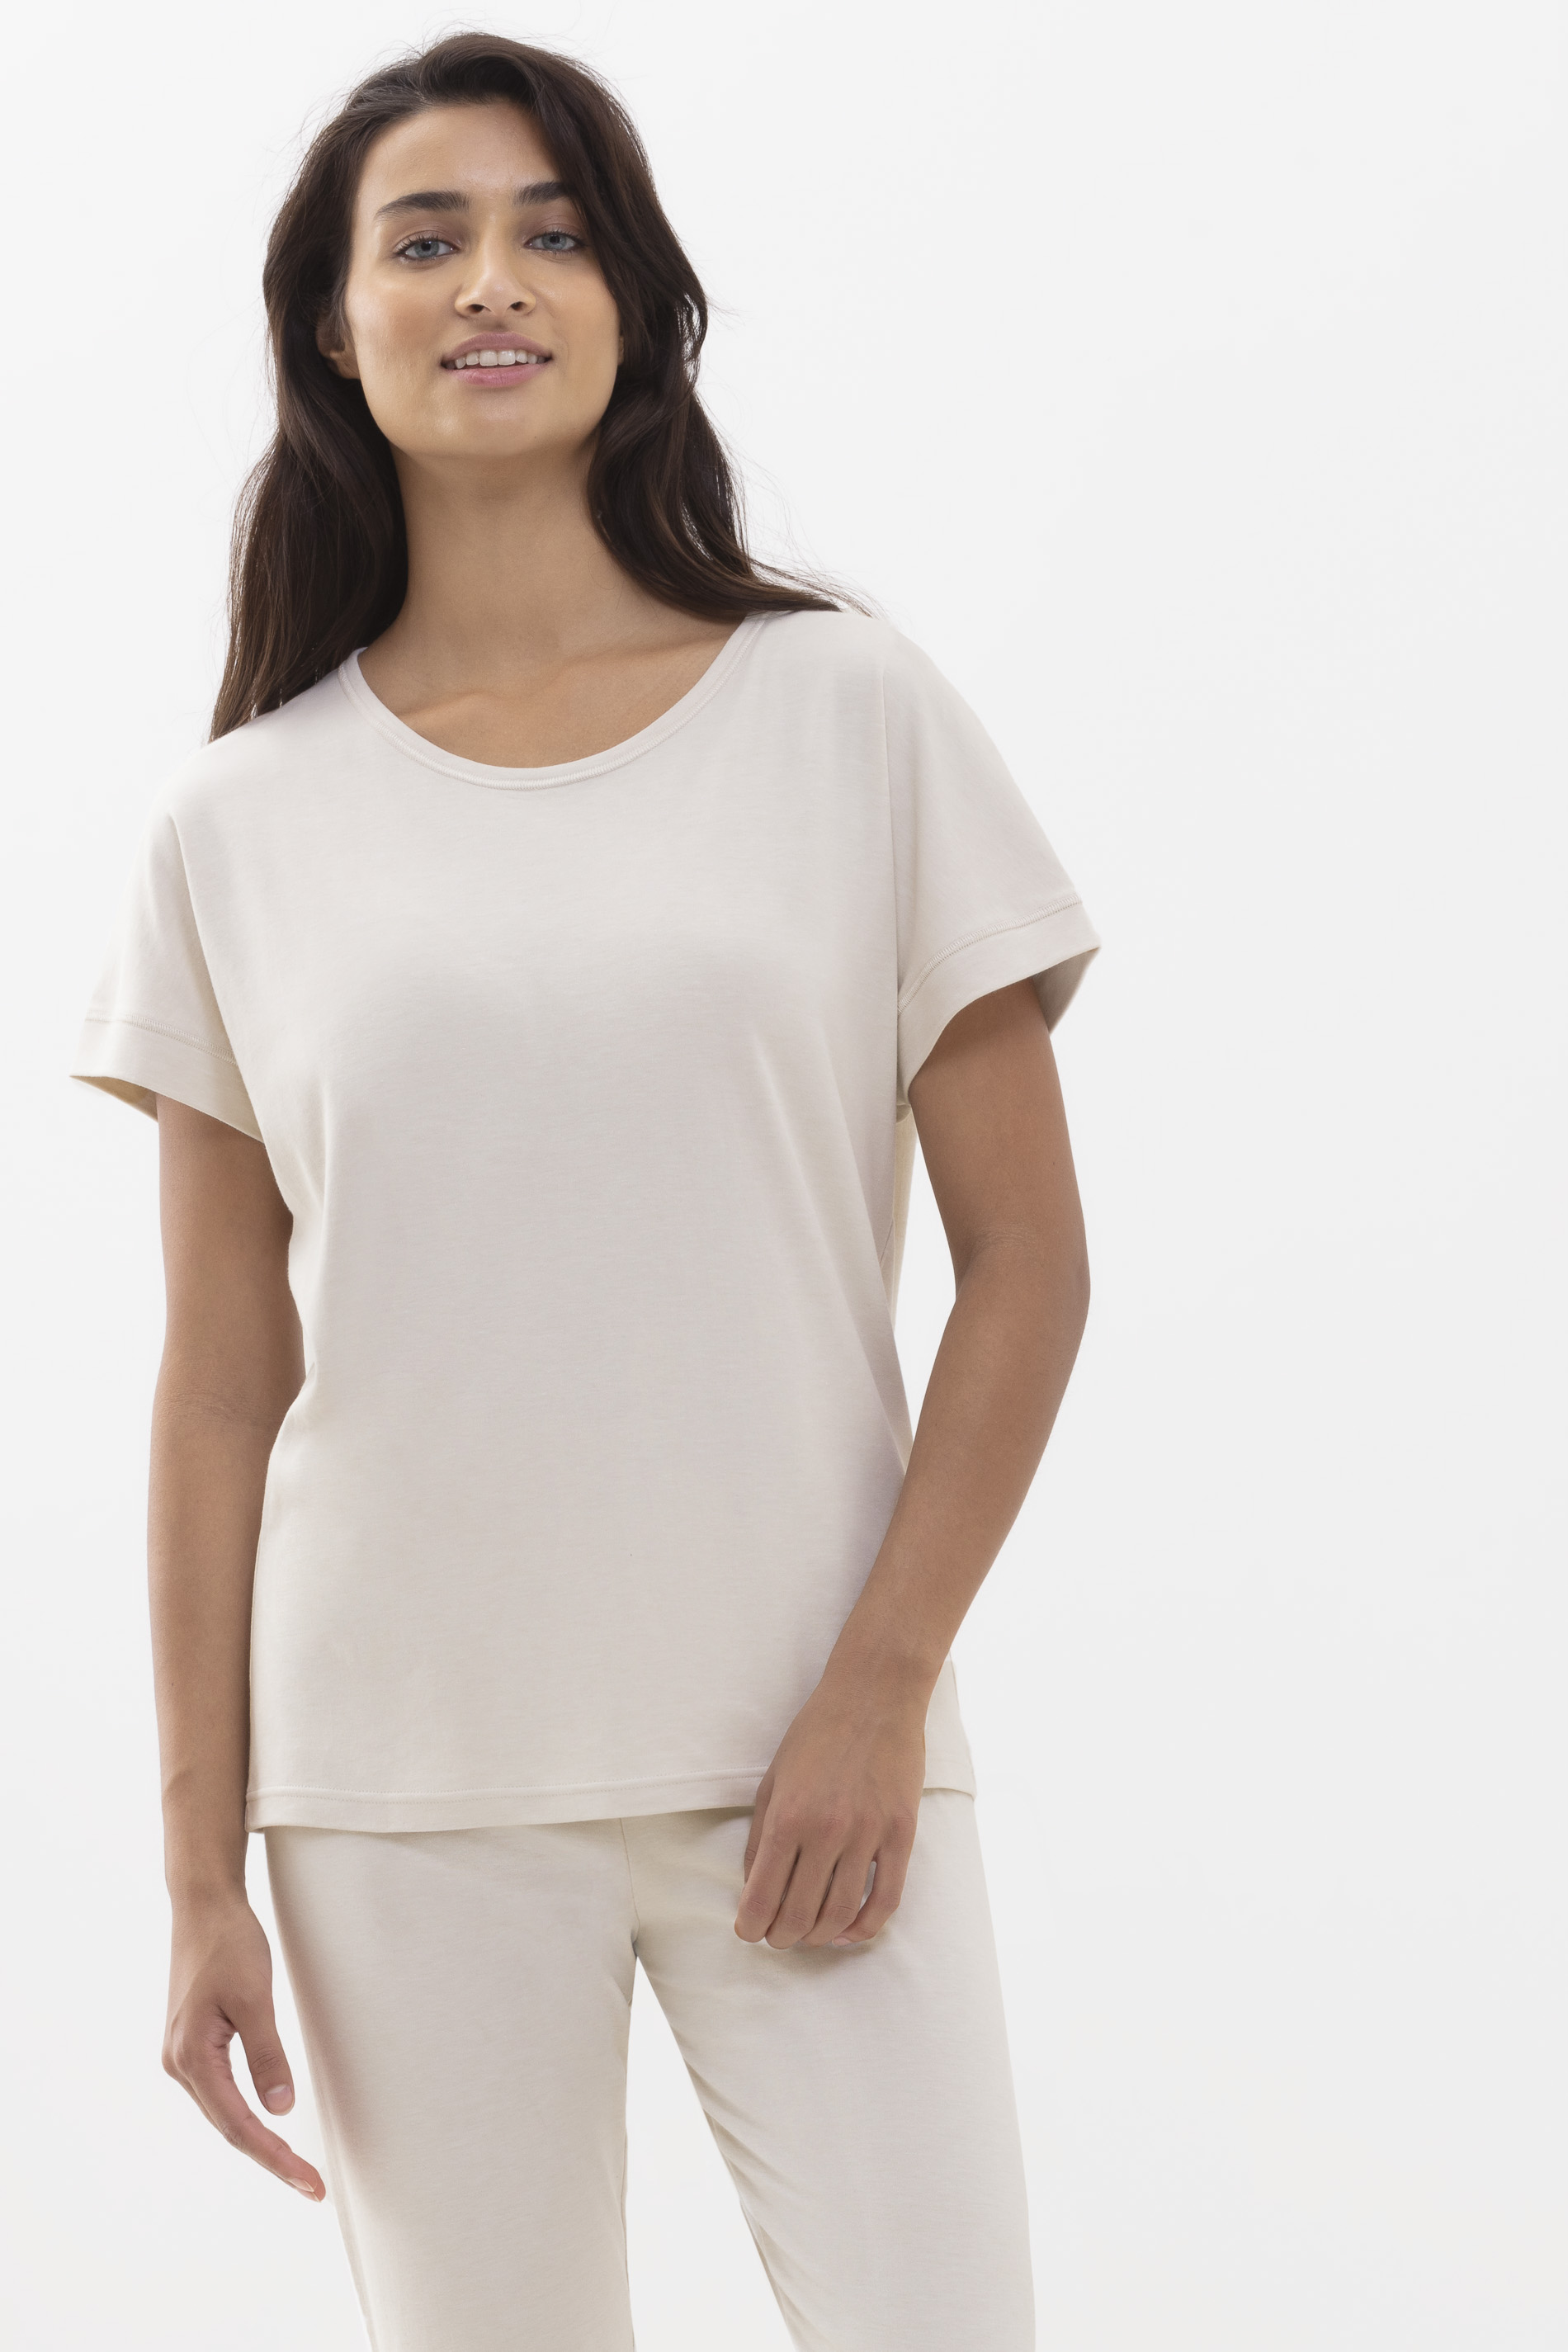 Shirt mit 1/2-Ärmel Natural Serie N8TEX 2.0 Frontansicht | mey®